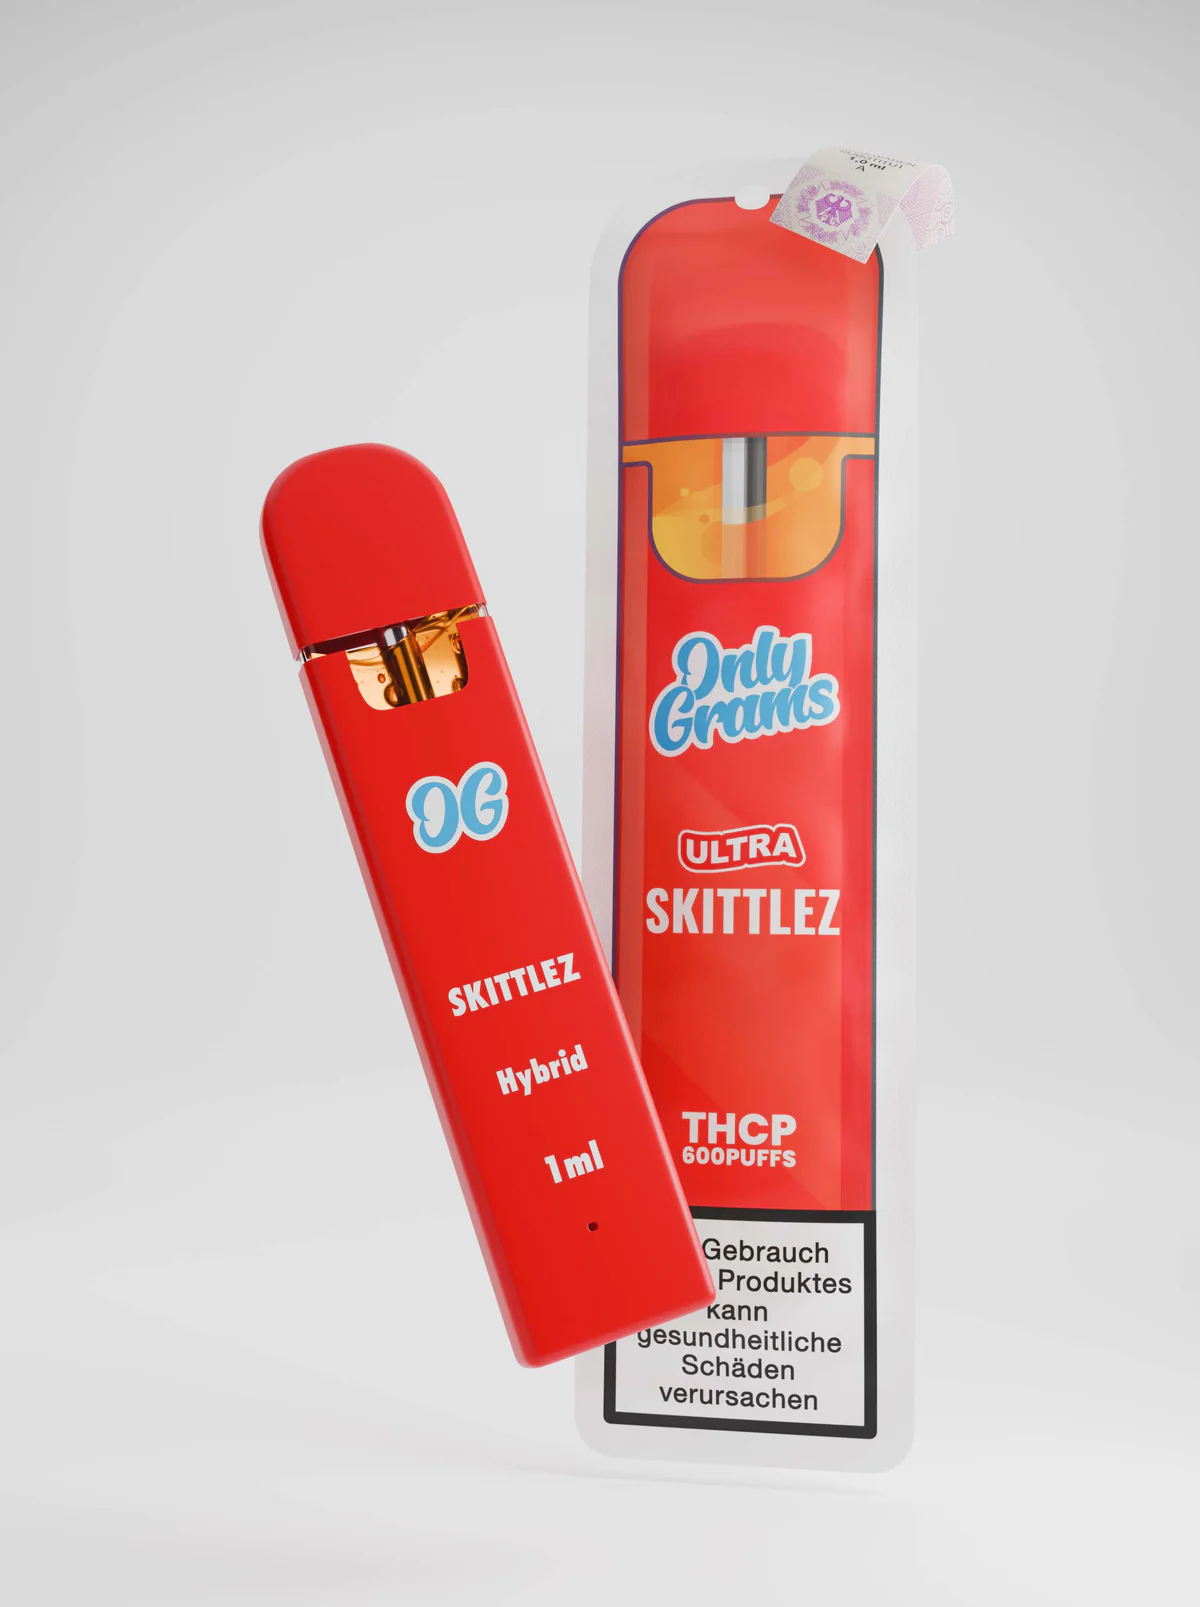 Only Grams Vape Skittlez Ultra E Zigarette 1ml NIKOTINFREI